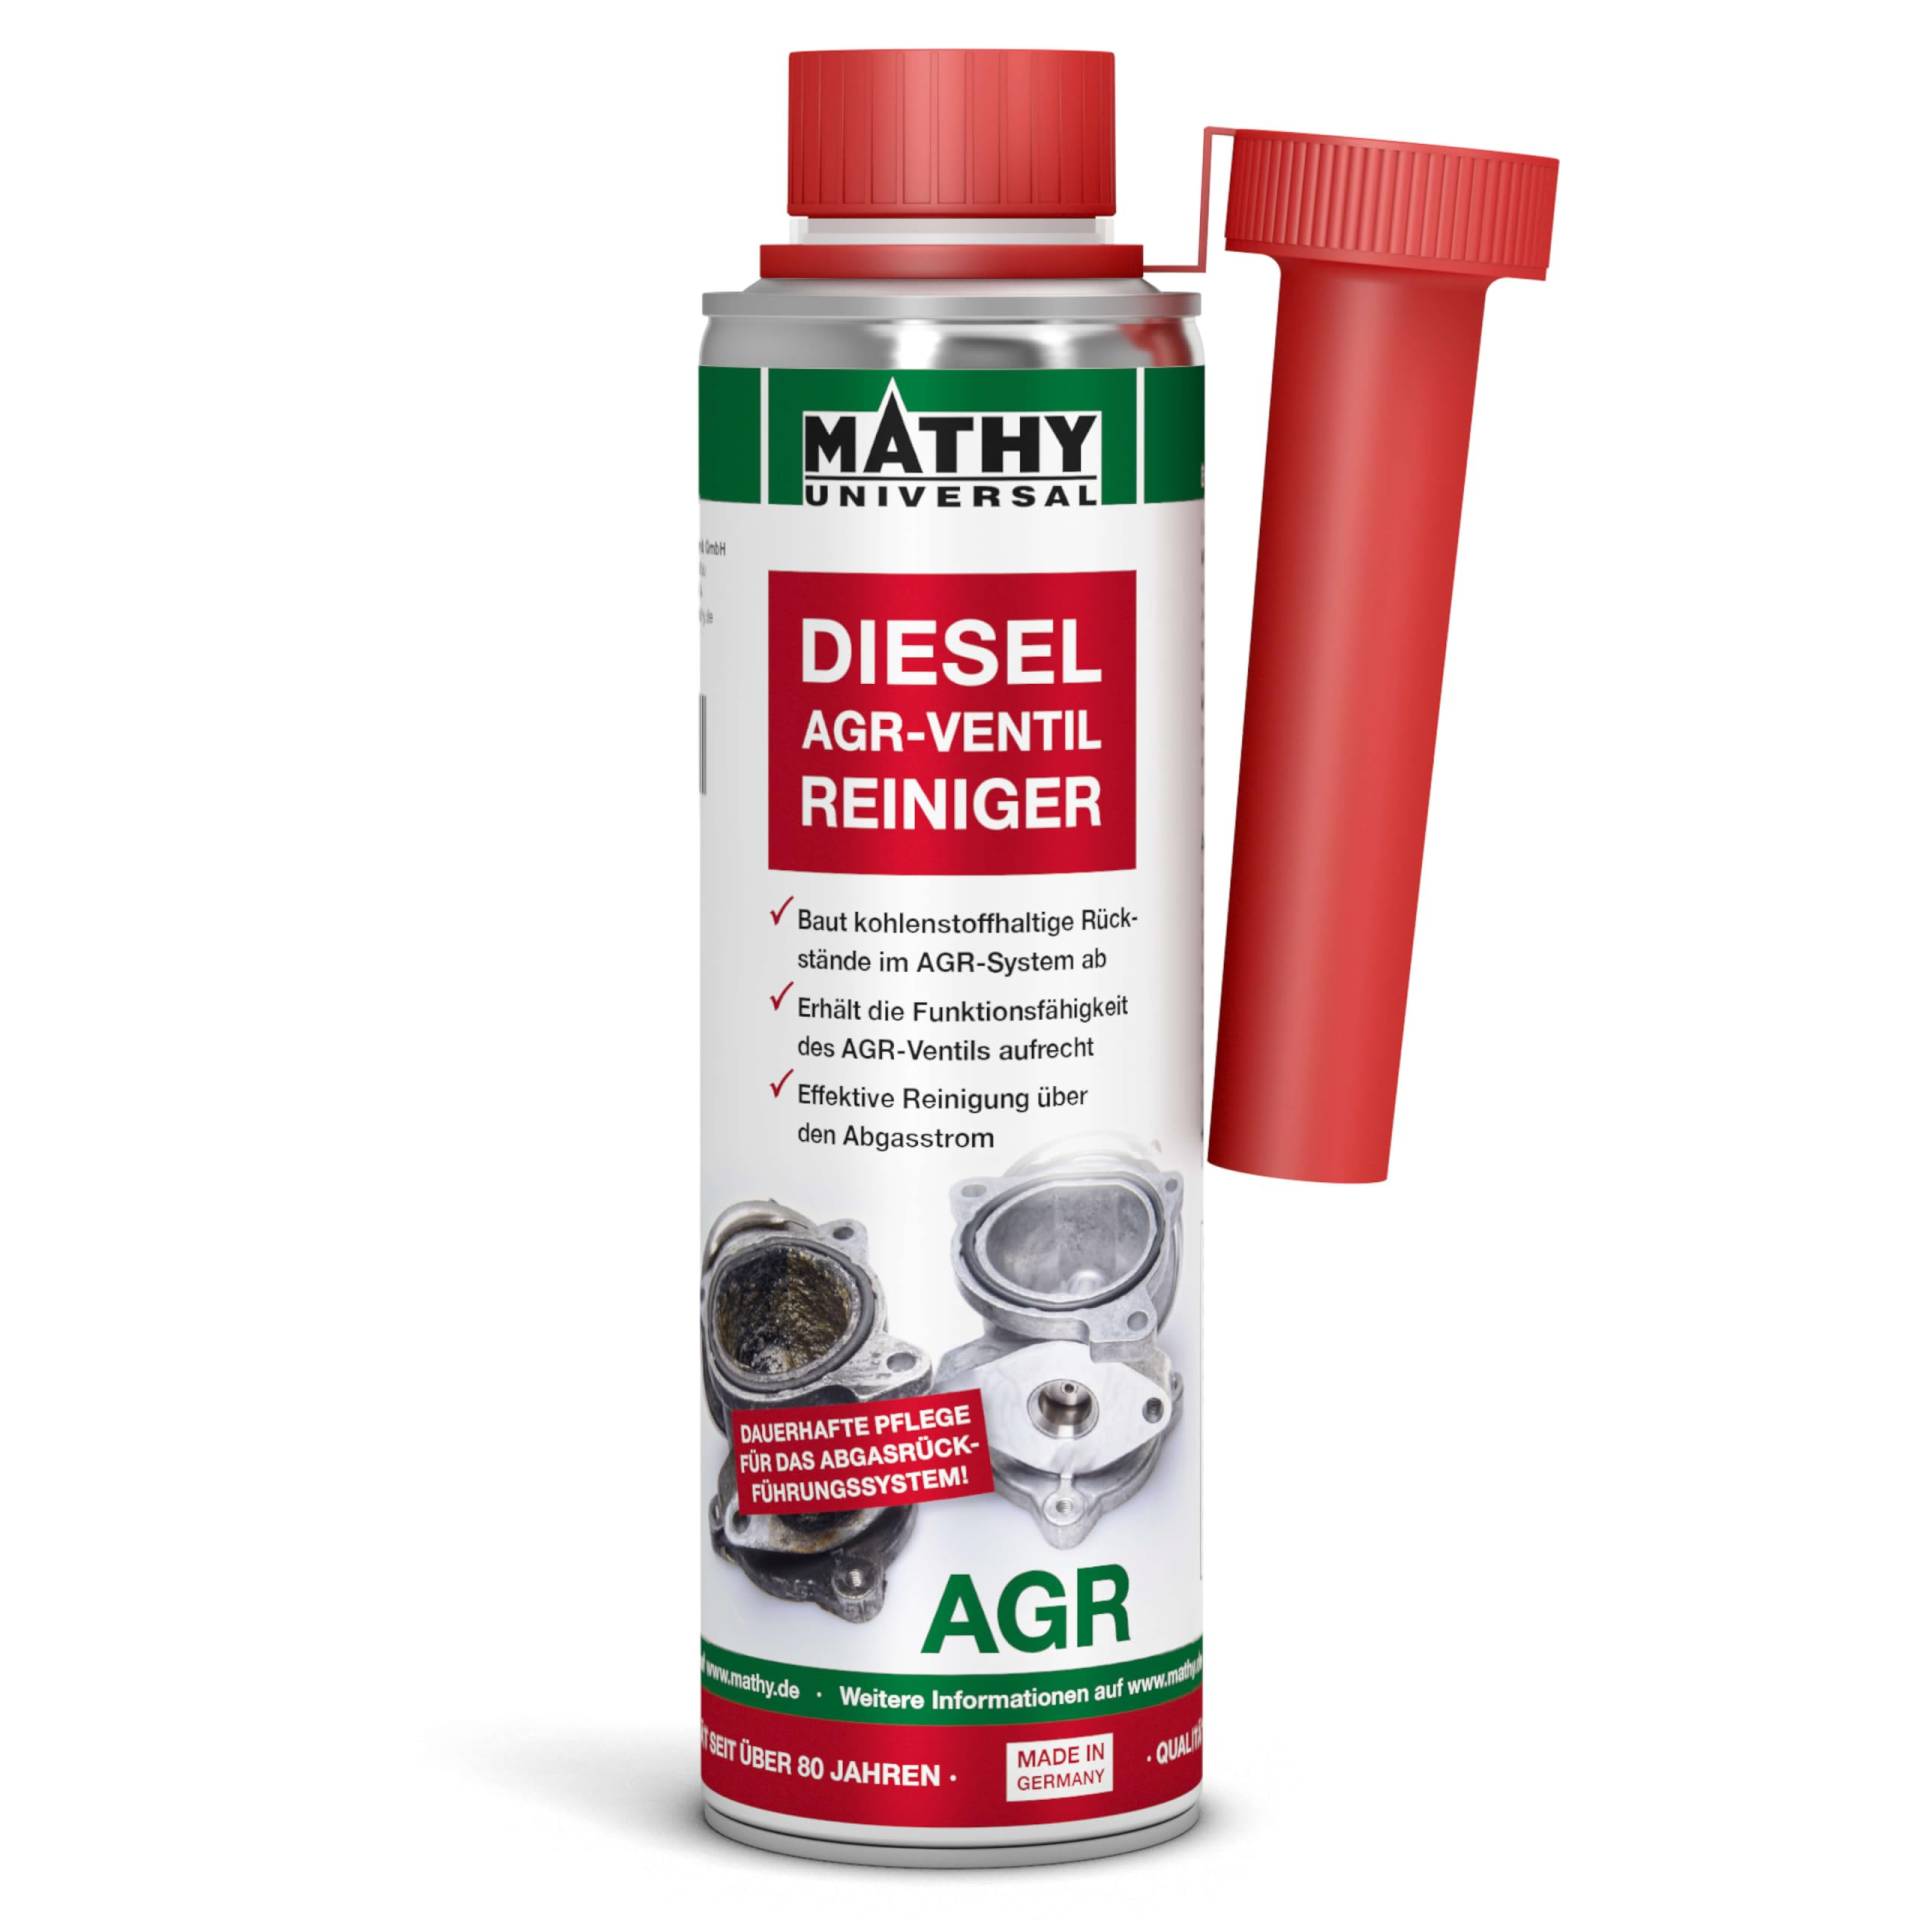 MATHY-AGR Reiniger Diesel - Diesel Systemreiniger für Dieselmotoren mit Abgasrückführungsventil - AGR-Ventil Reiniger - Diesel Additiv, 300 ml von MATHY